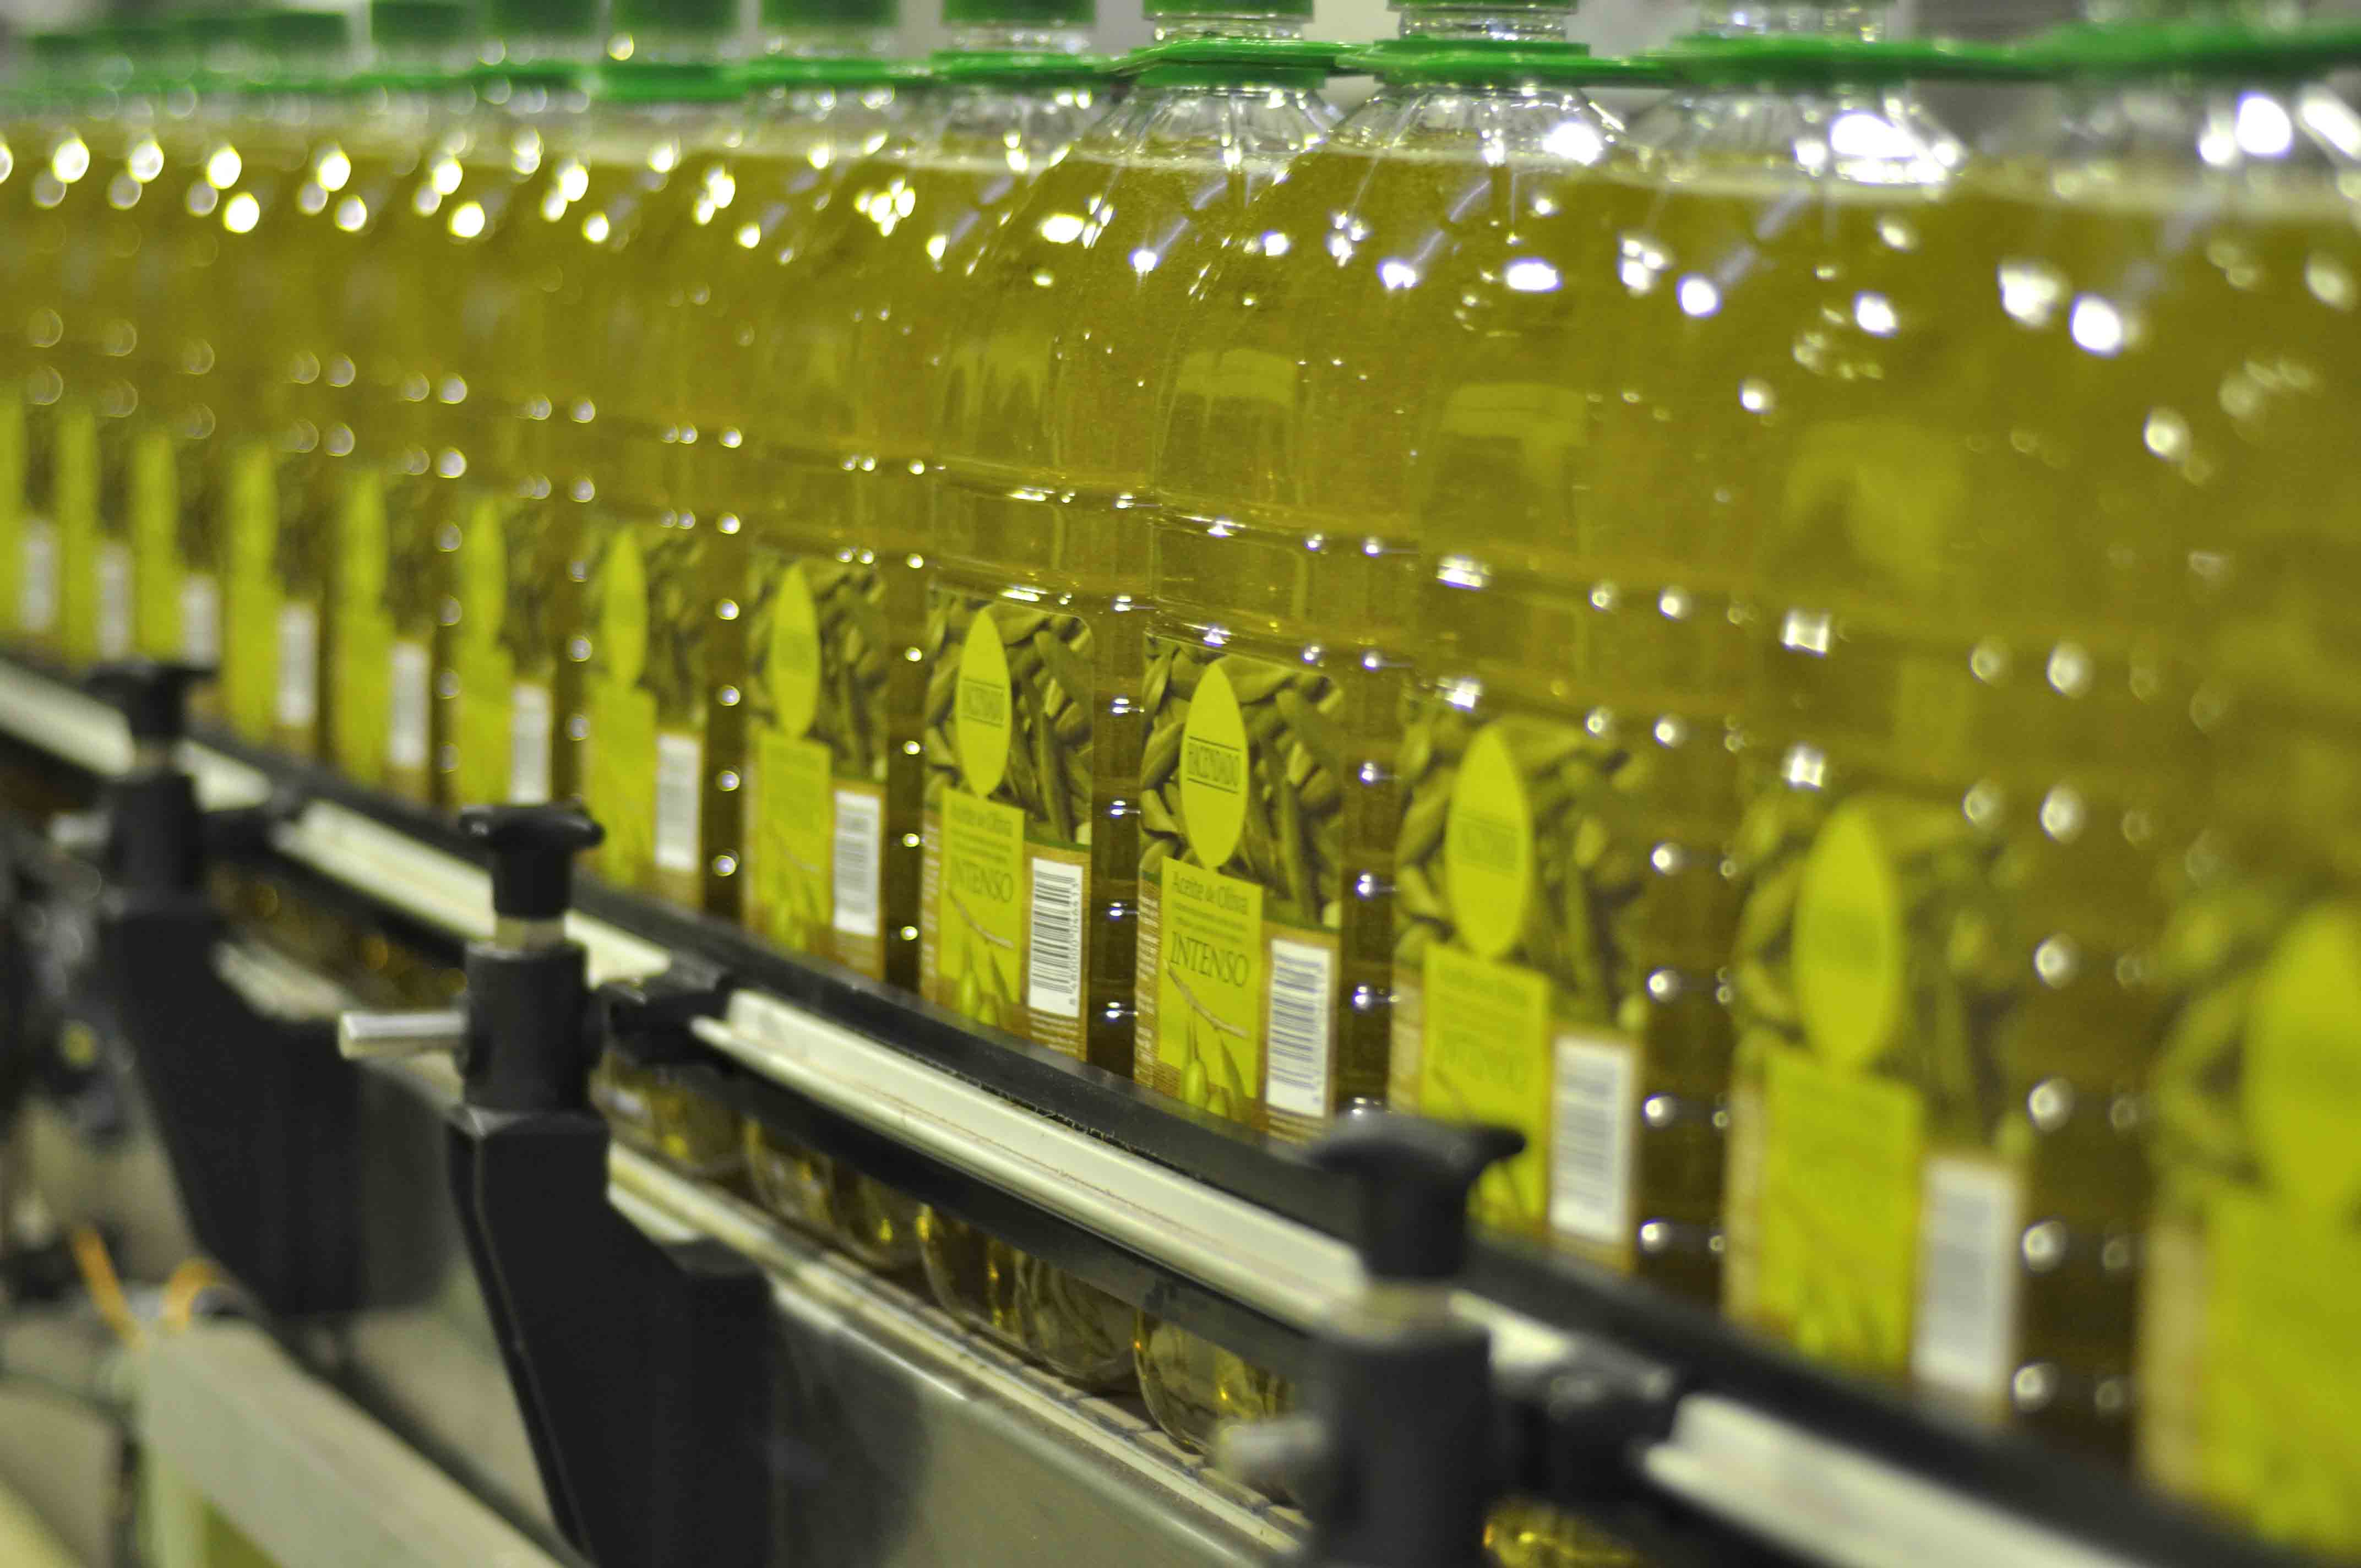 Sube un 17,7% la venta de aceite de oliva en los 6 primeros meses de campaña, según Anierac